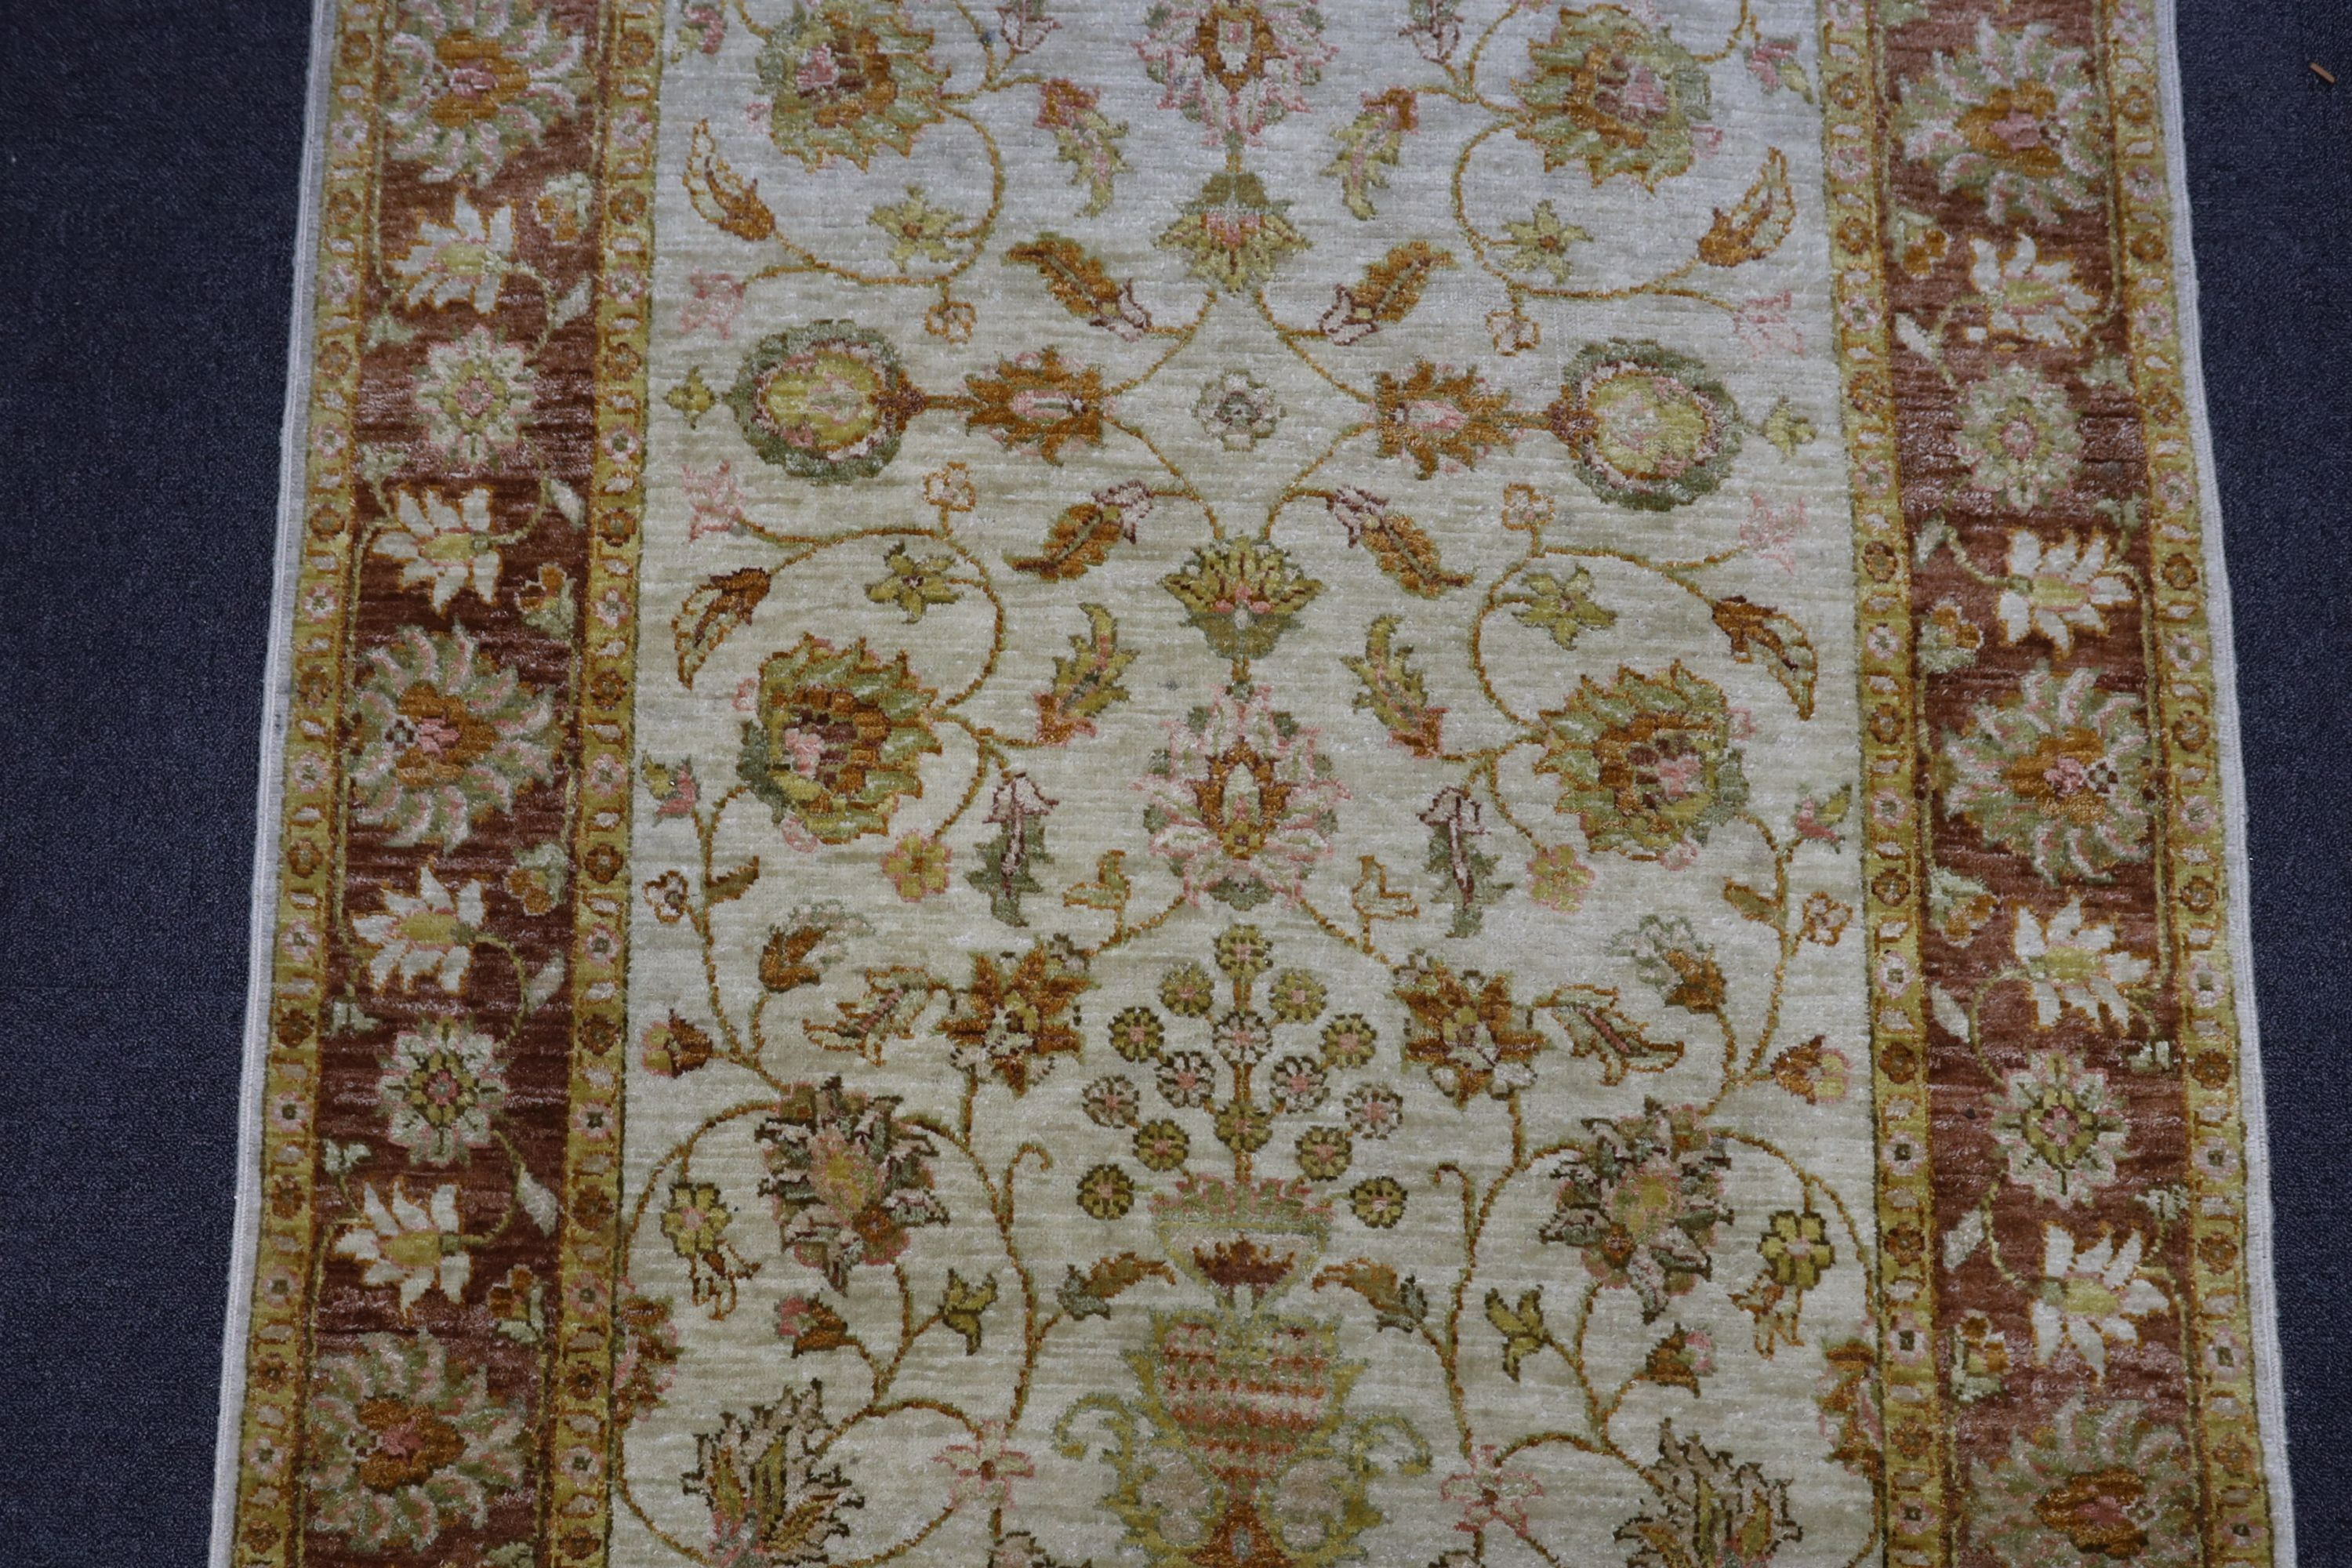 A Ziegler style ivory ground rug, 188 x 122cm